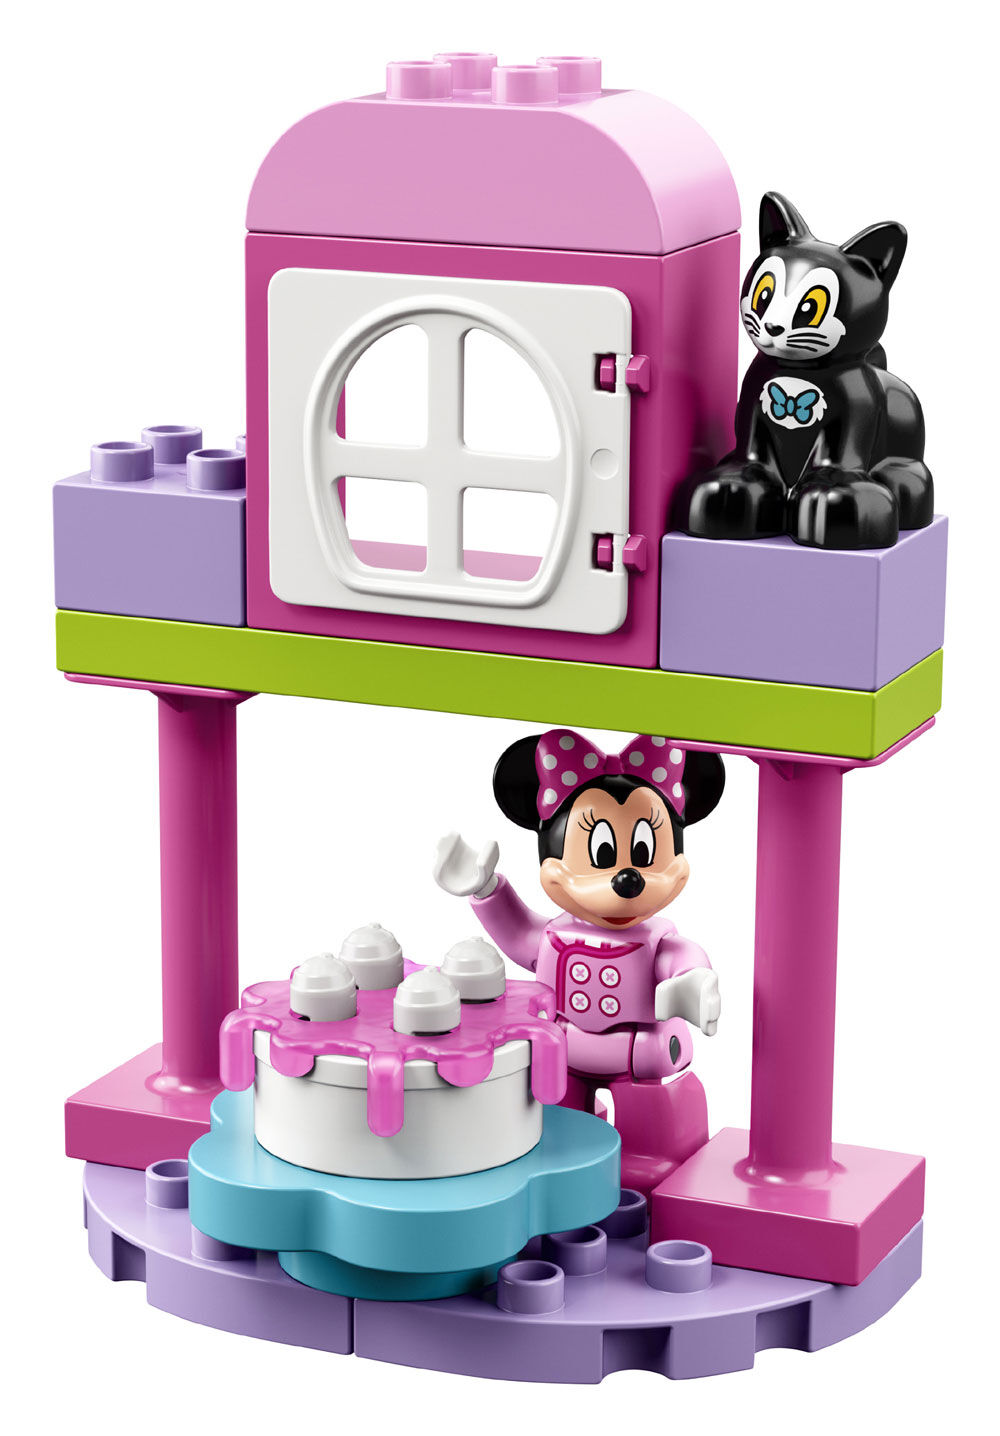 10873 LEGO DUPLO Disney La fête danniversaire de Minnie Jeu de Construction